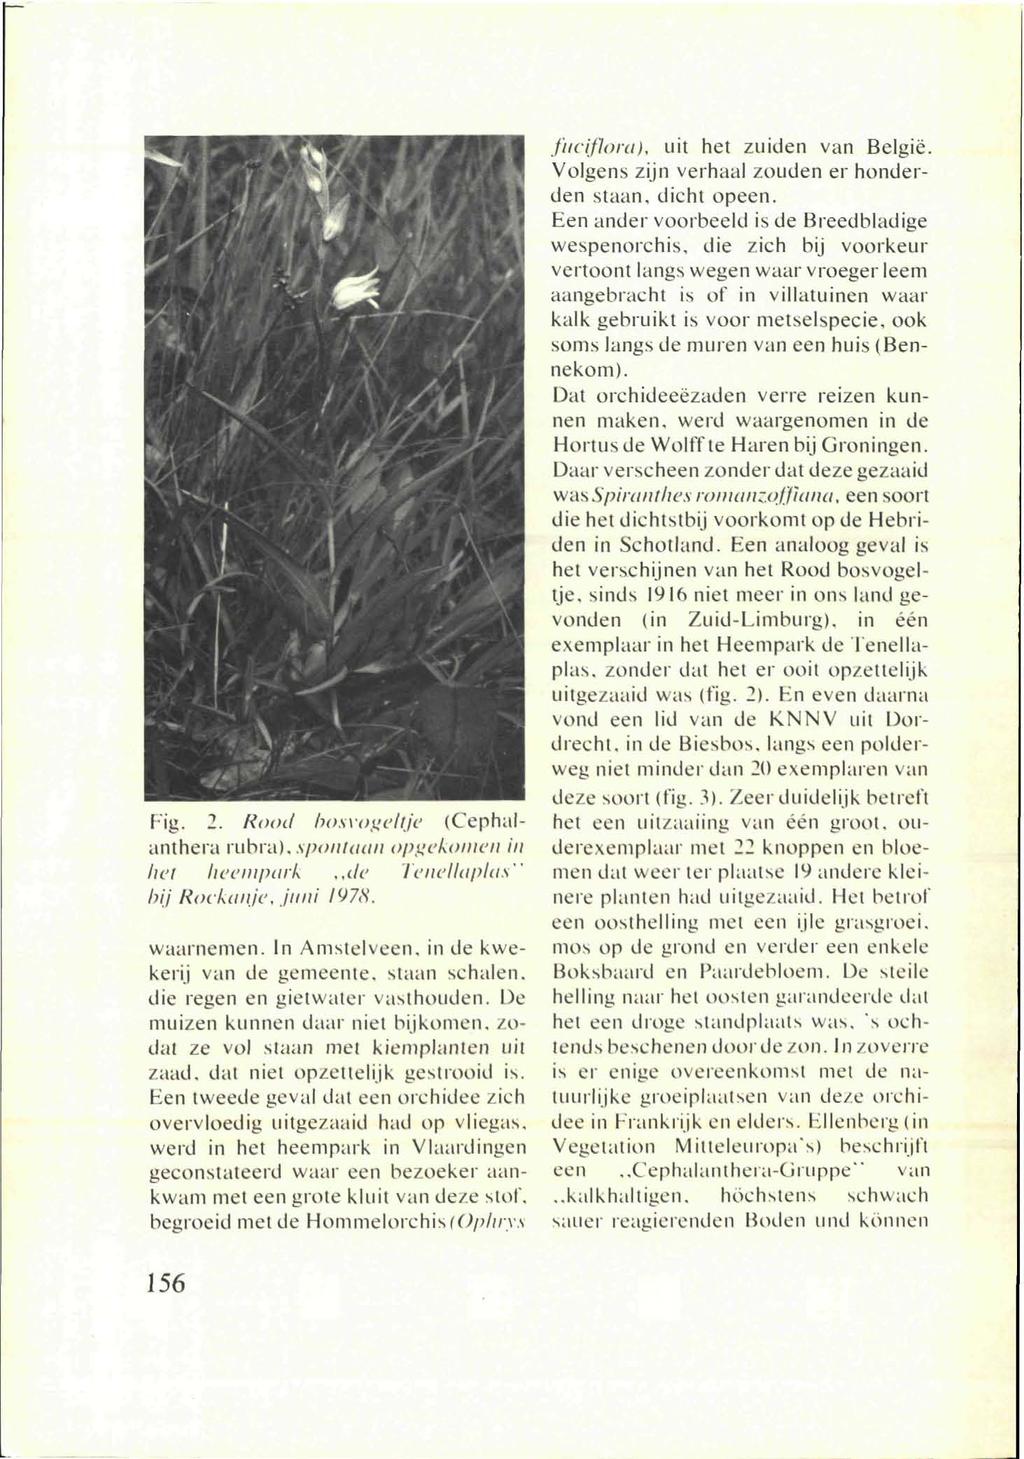 Tig. 2. Rood bosvogeltjc (Cephalanthera rubra), spontaan opgekomen in het heempark,,de Tenellaplas" bij Rockanje, juni 1978. waarnemen. In Amstelveen, in de kwekerij van de gemeente, slaan schalen.